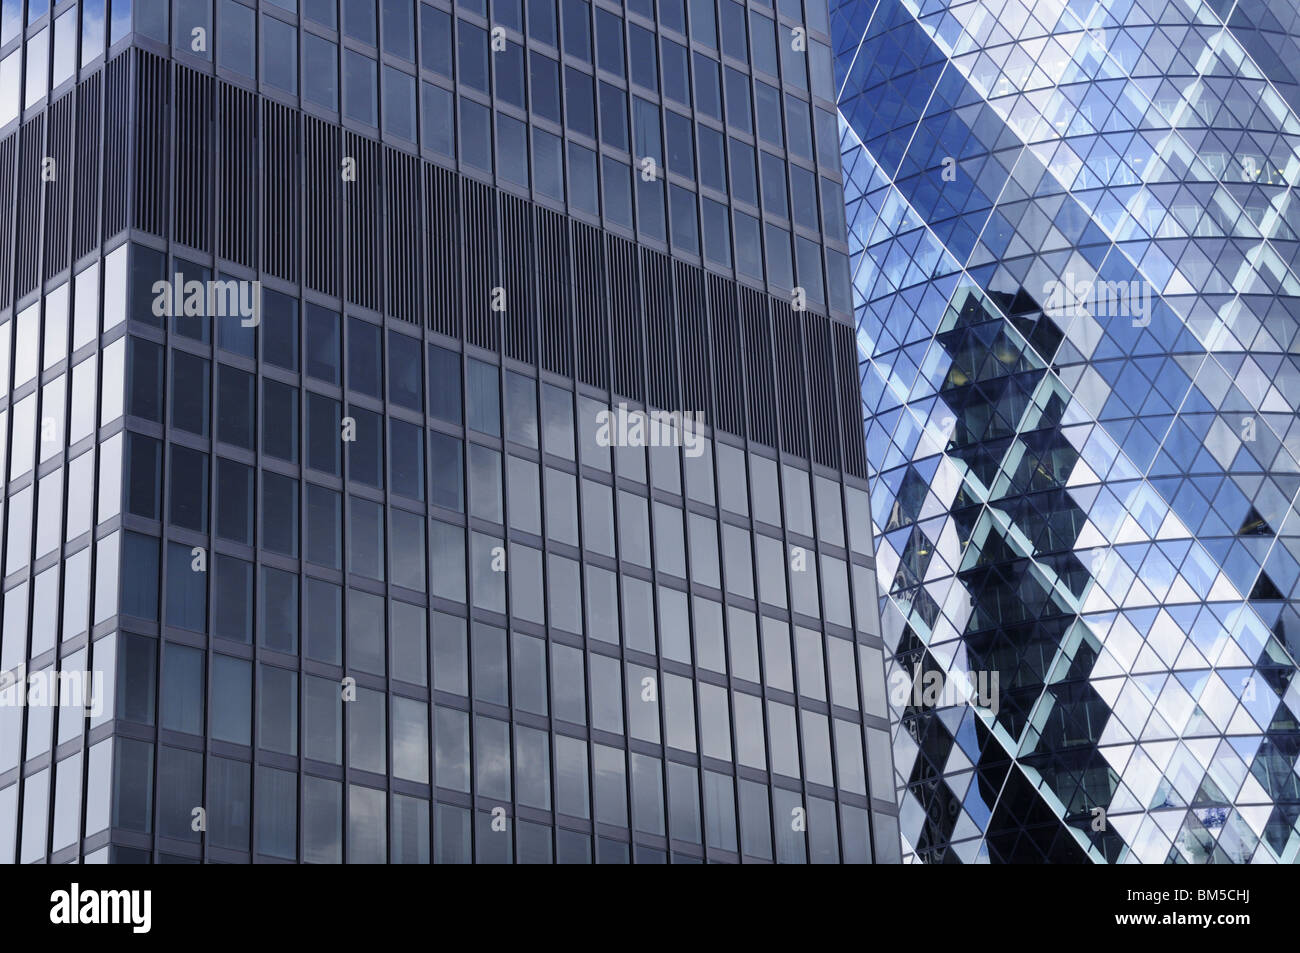 Résumé Détail de l'édifice et 30 Aviva St Mary Axe des gratte-ciel, London, England, UK Banque D'Images